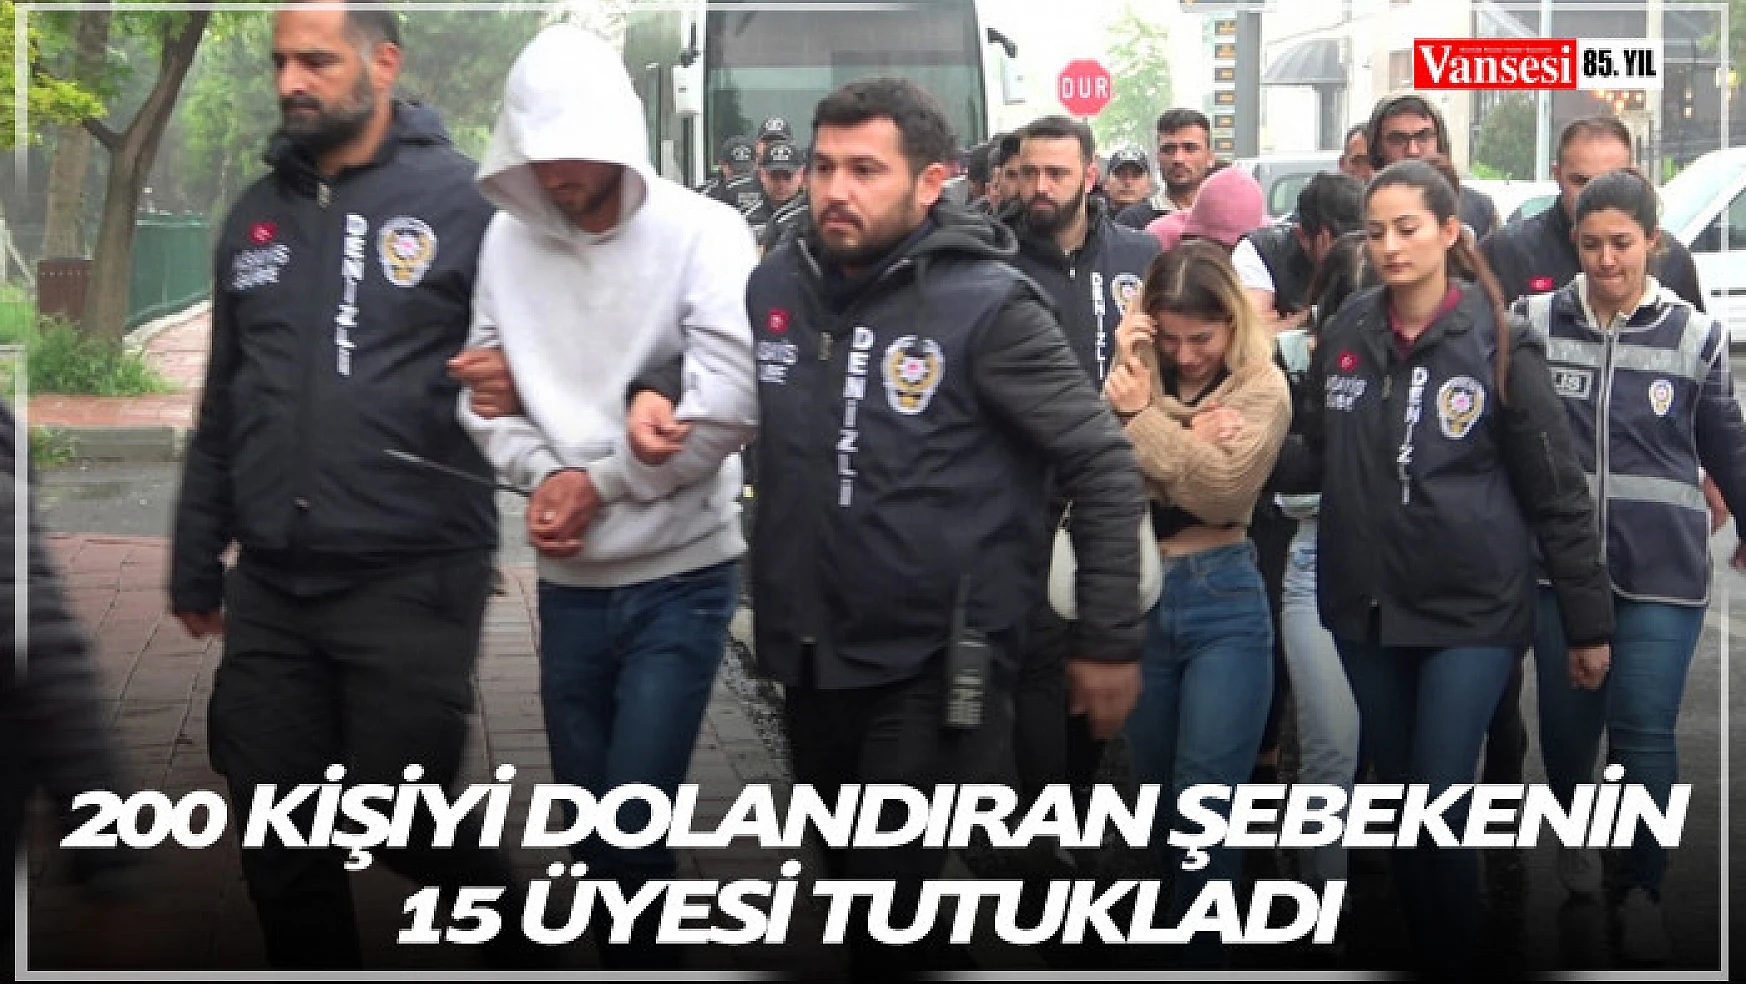 İcra takibi yalanıyla 200 kişiyi dolandıran şebekenin 15 üyesi tutukladı